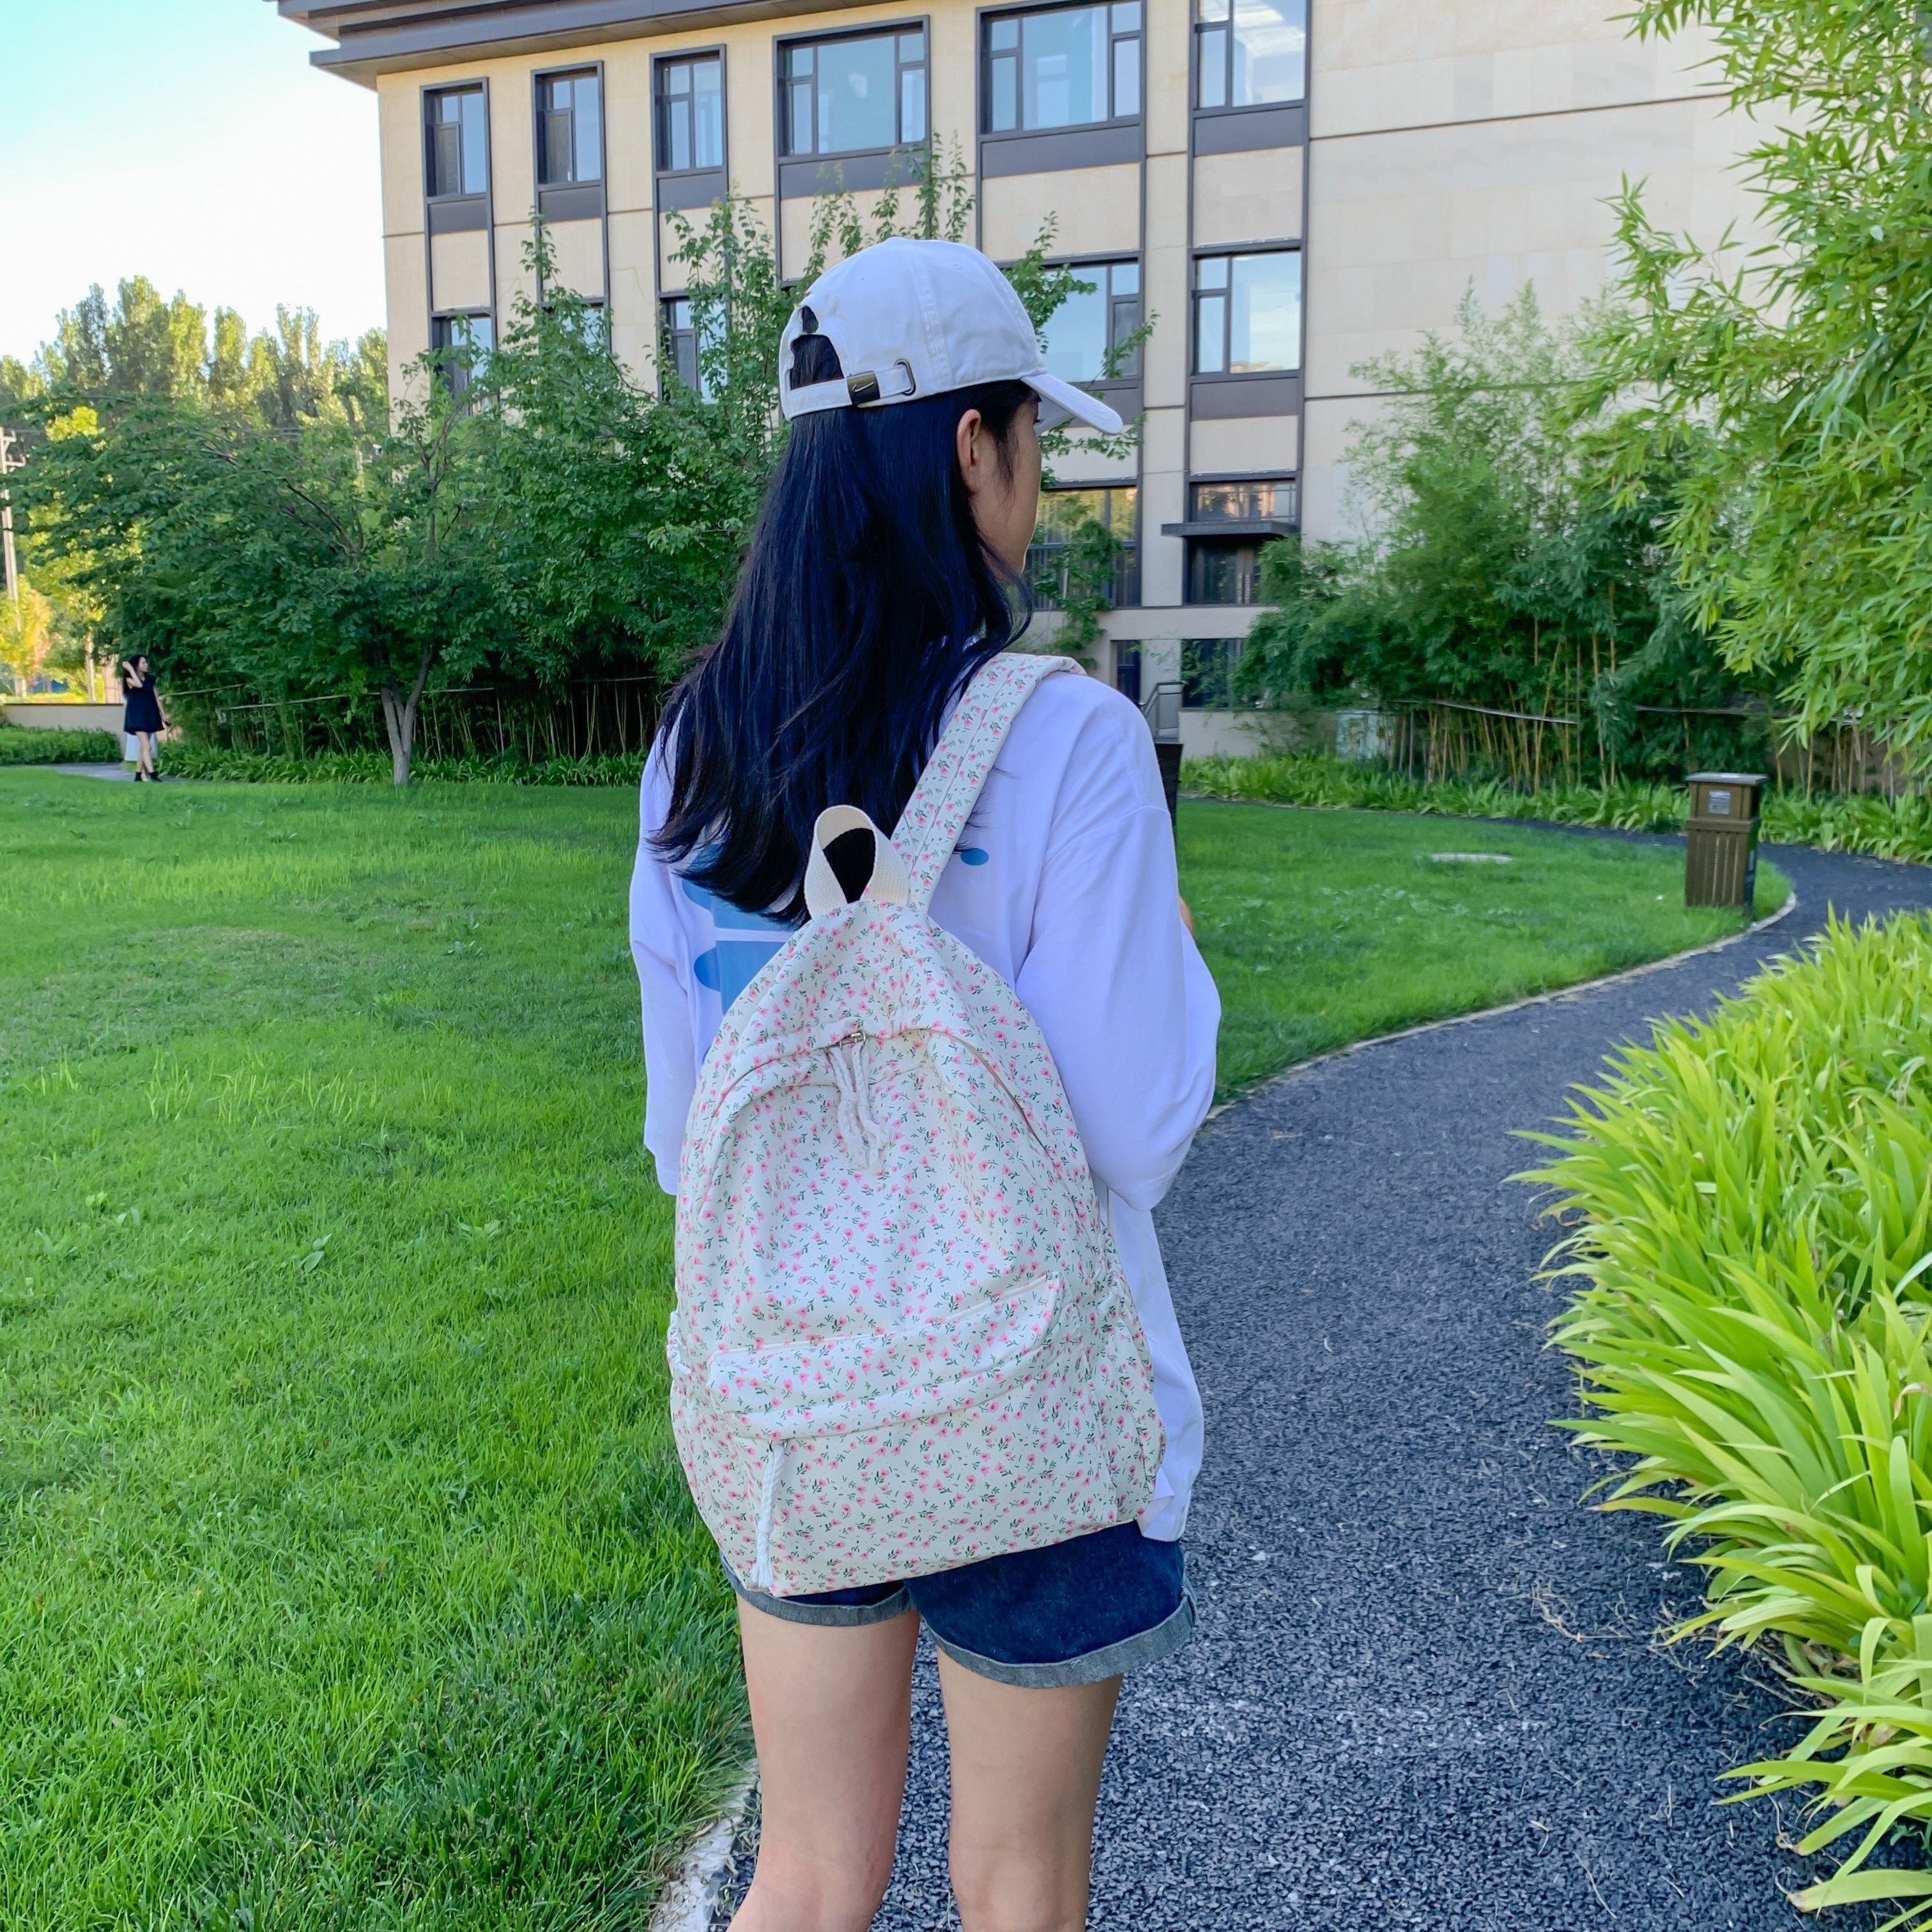 

Women's Floral Print Backpack, Double-ended Zipper Shoulder Bag For School, Travel, Short Trip Daypack